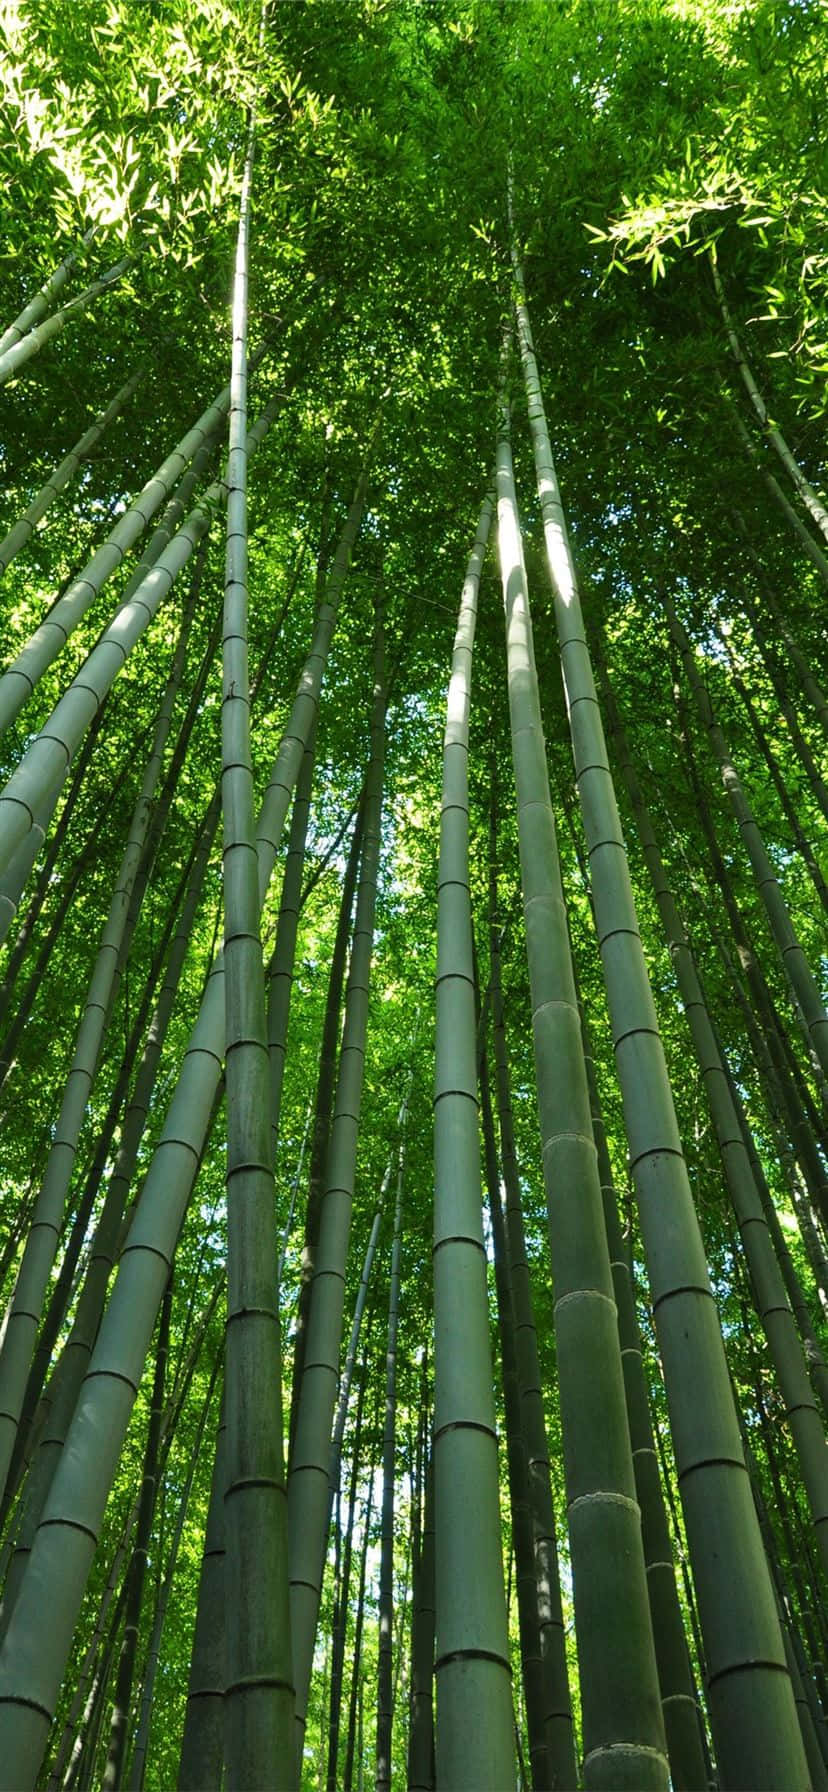 Fondode Pantalla De Bosque De Bambú - Fondo De Pantalla De Bosque De Bambú Fondo de pantalla